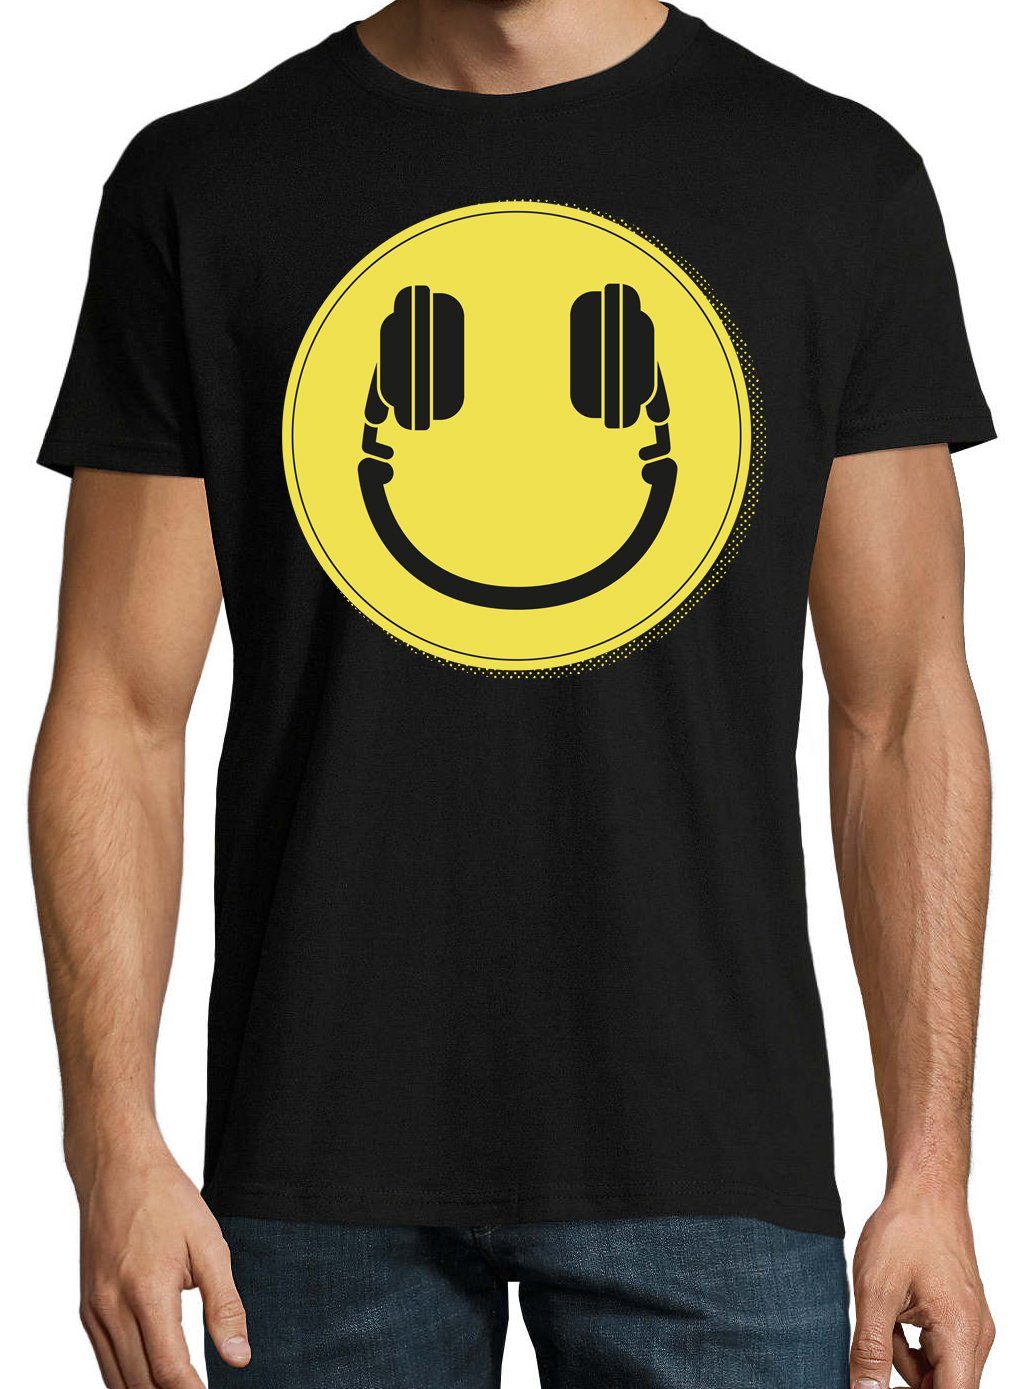 Youth mit Designz lustigem Frontprint Headset Schwarz DJ T-Shirt Smile Smiley Herren T-Shirt